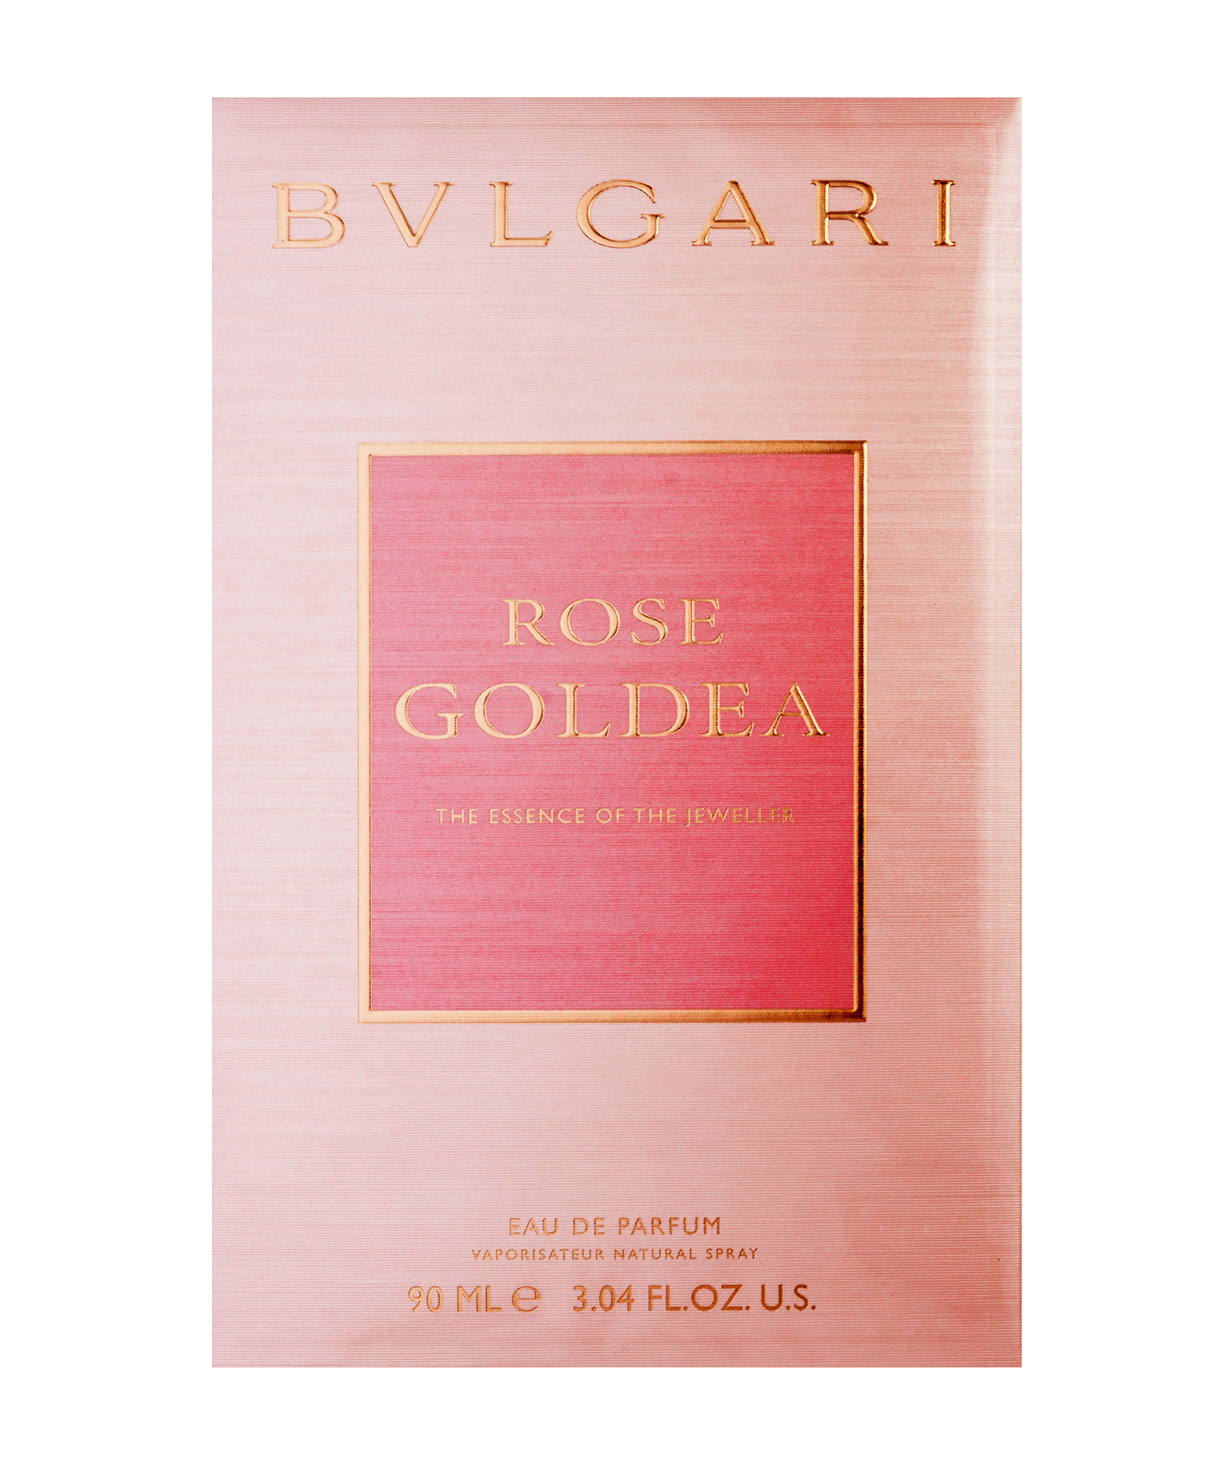 Օծանելիք «BVLGARI» Rose Goldea The Essence Of The Jeweler